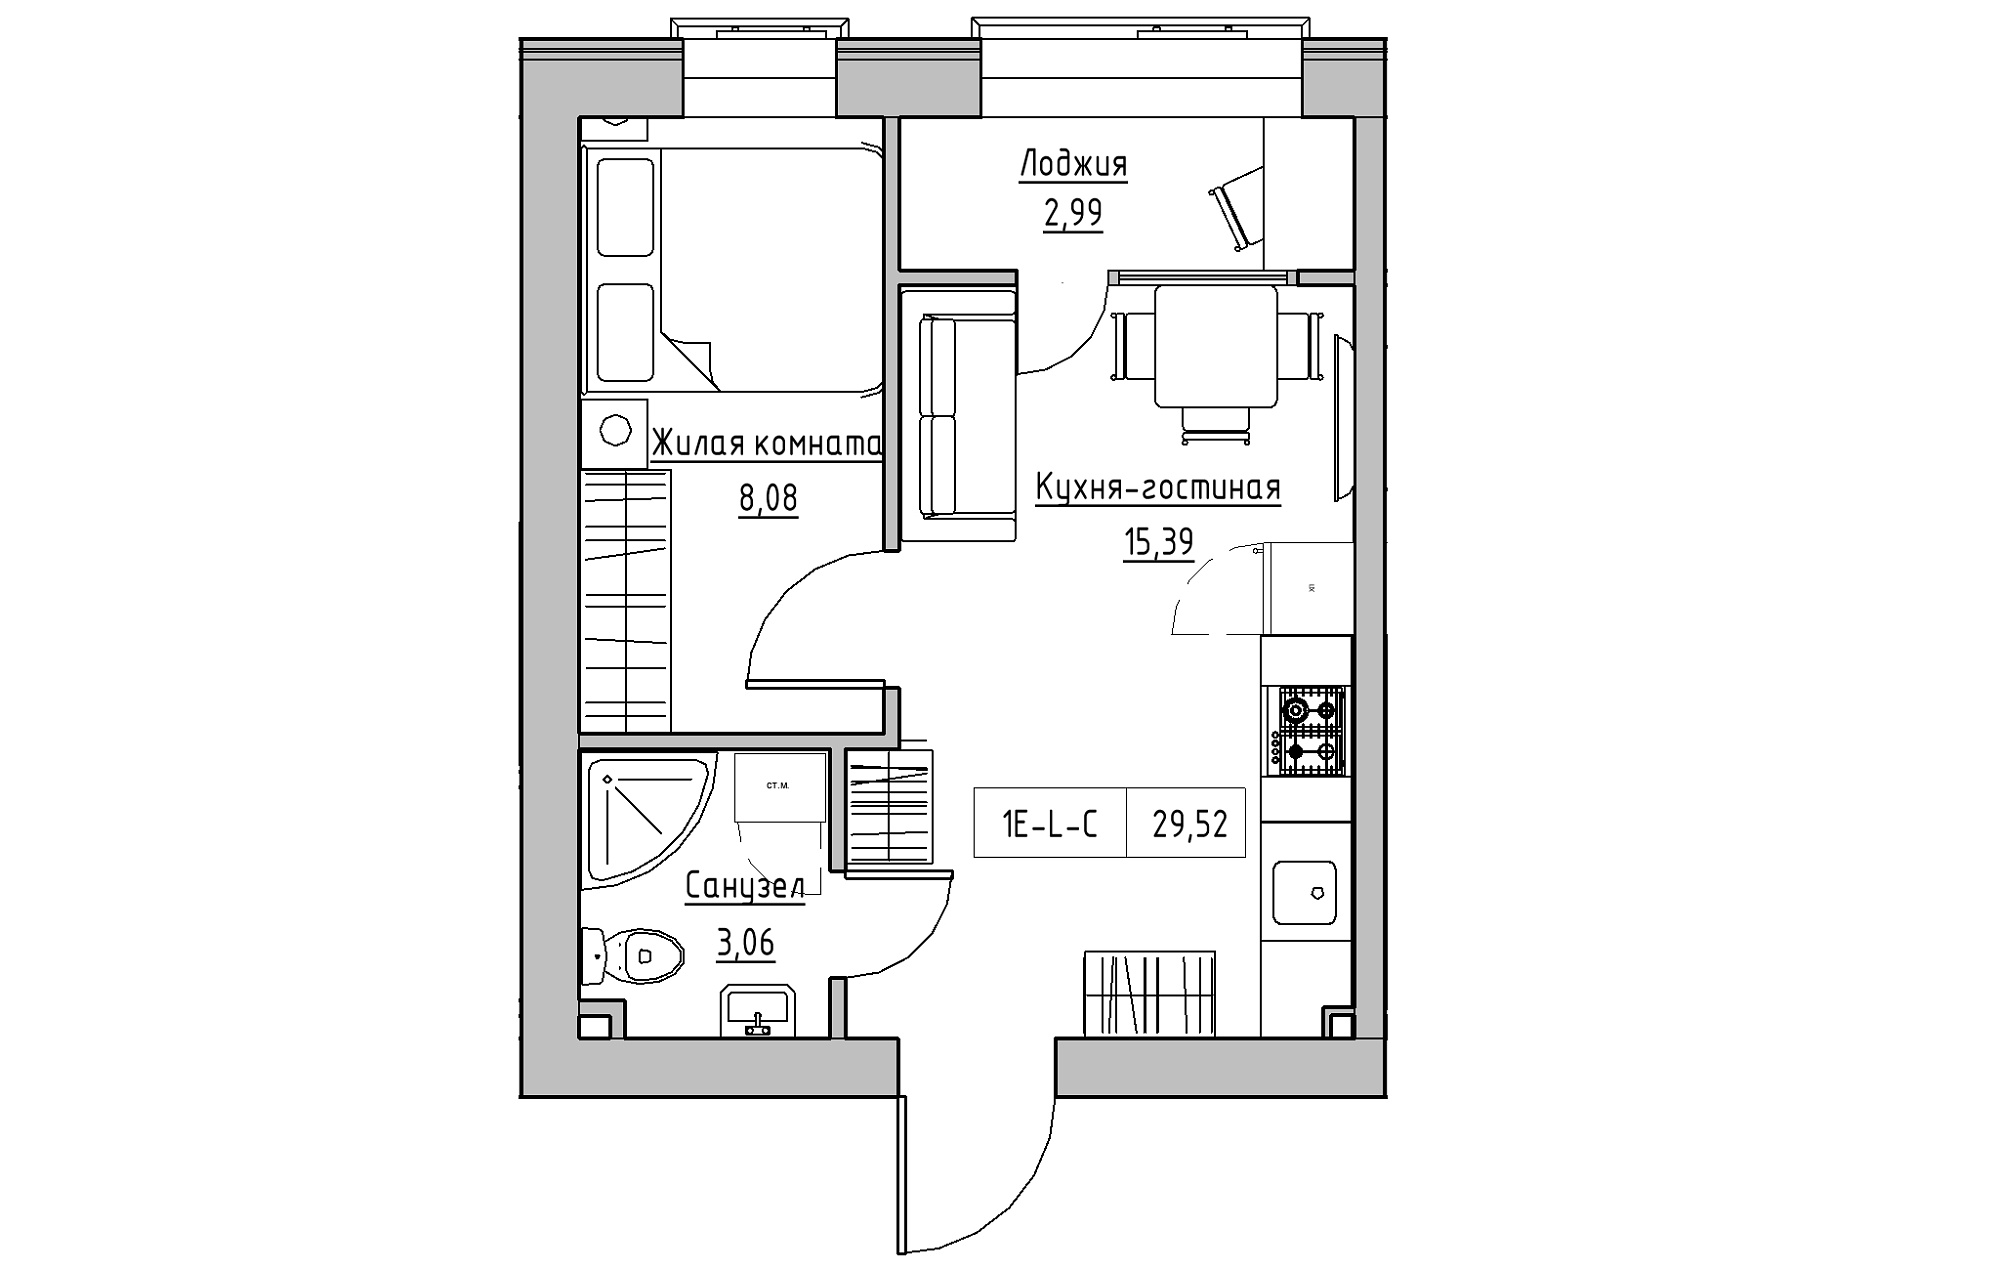 Планування 1-к квартира площею 29.52м2, KS-018-01/0006.